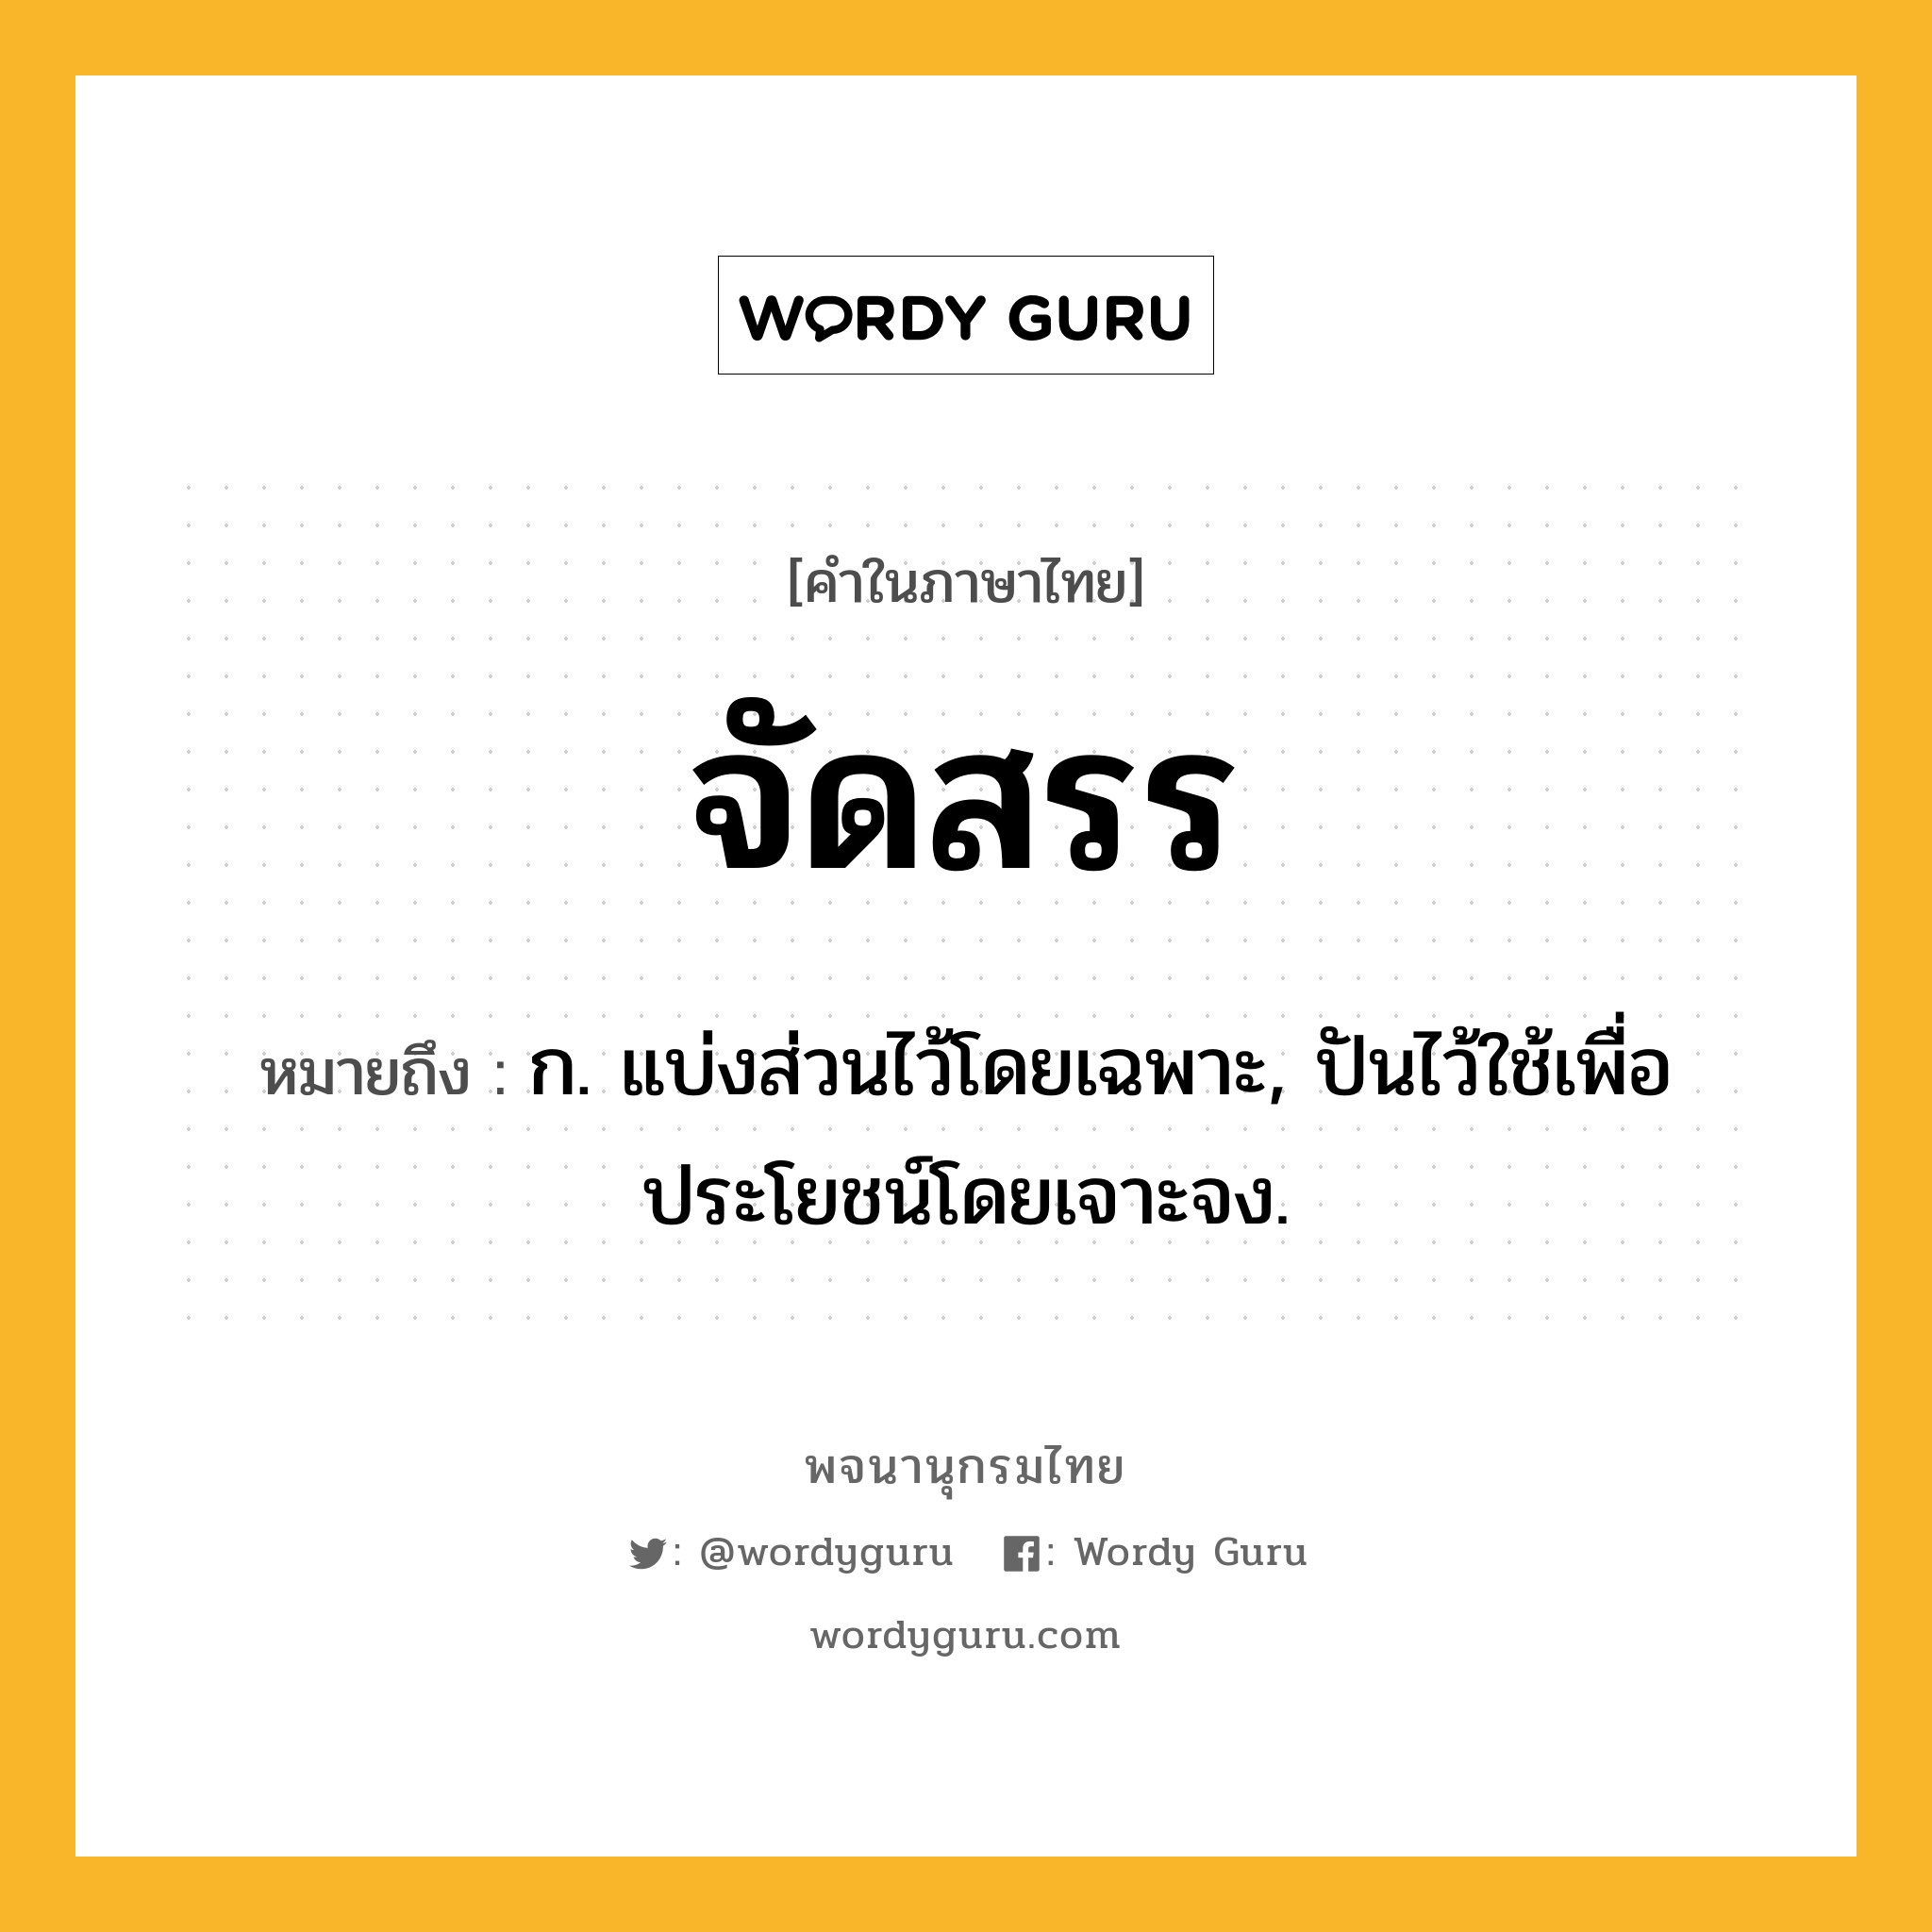 จัดสรร หมายถึงอะไร?, คำในภาษาไทย จัดสรร หมายถึง ก. แบ่งส่วนไว้โดยเฉพาะ, ปันไว้ใช้เพื่อประโยชน์โดยเจาะจง.